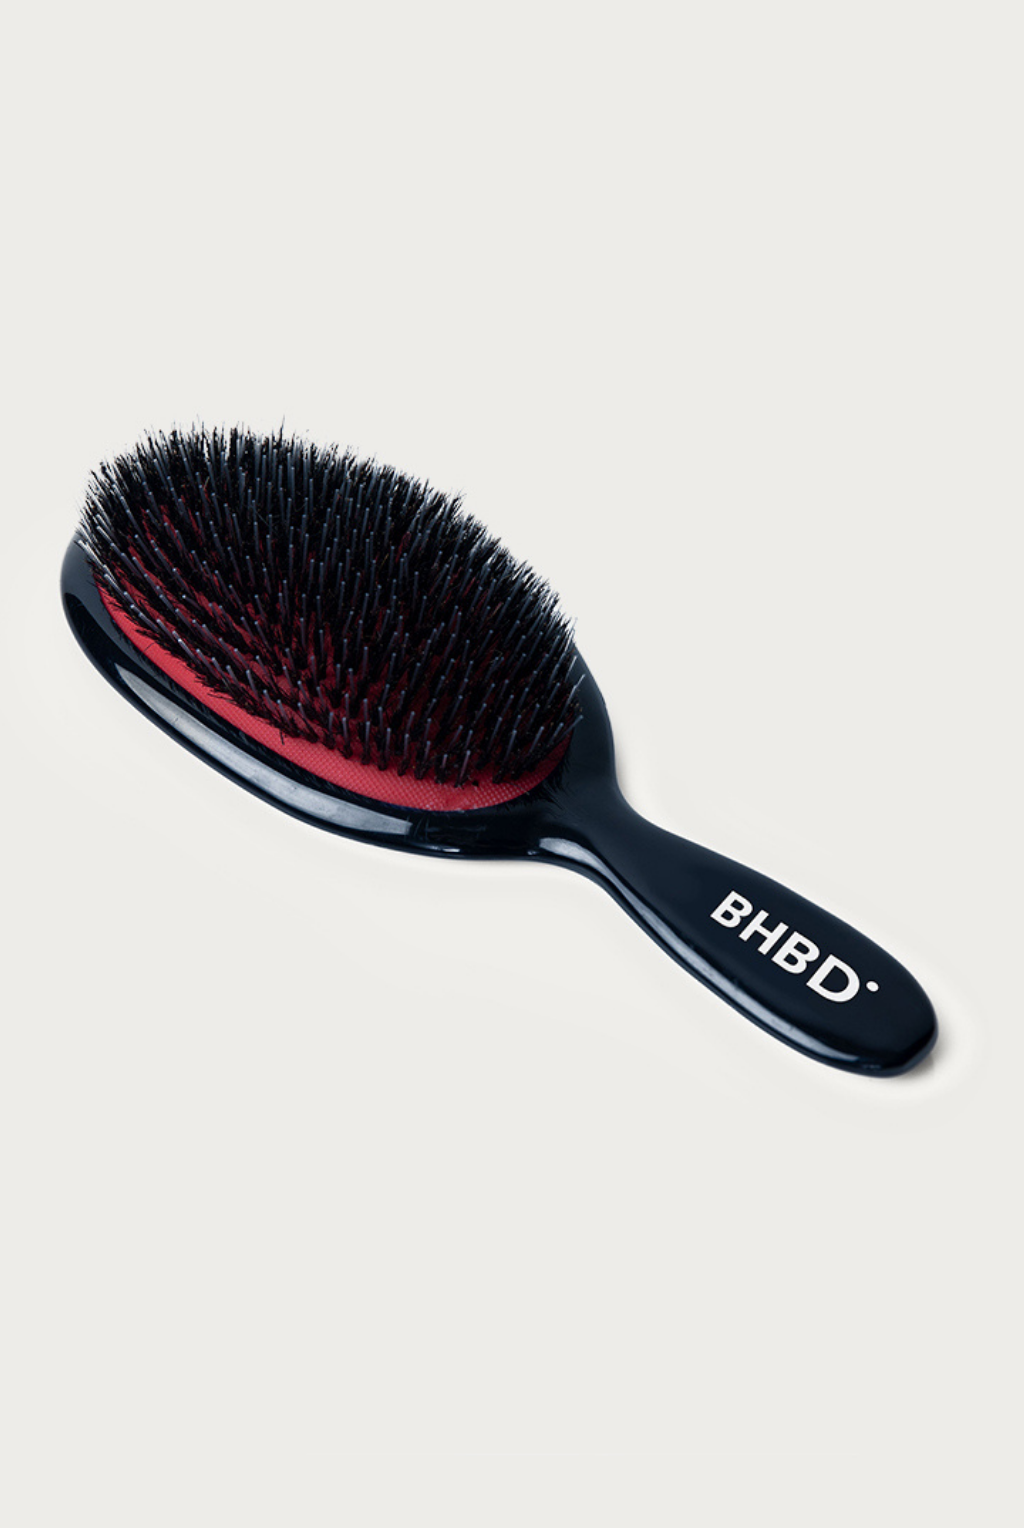 BHBD wig brush